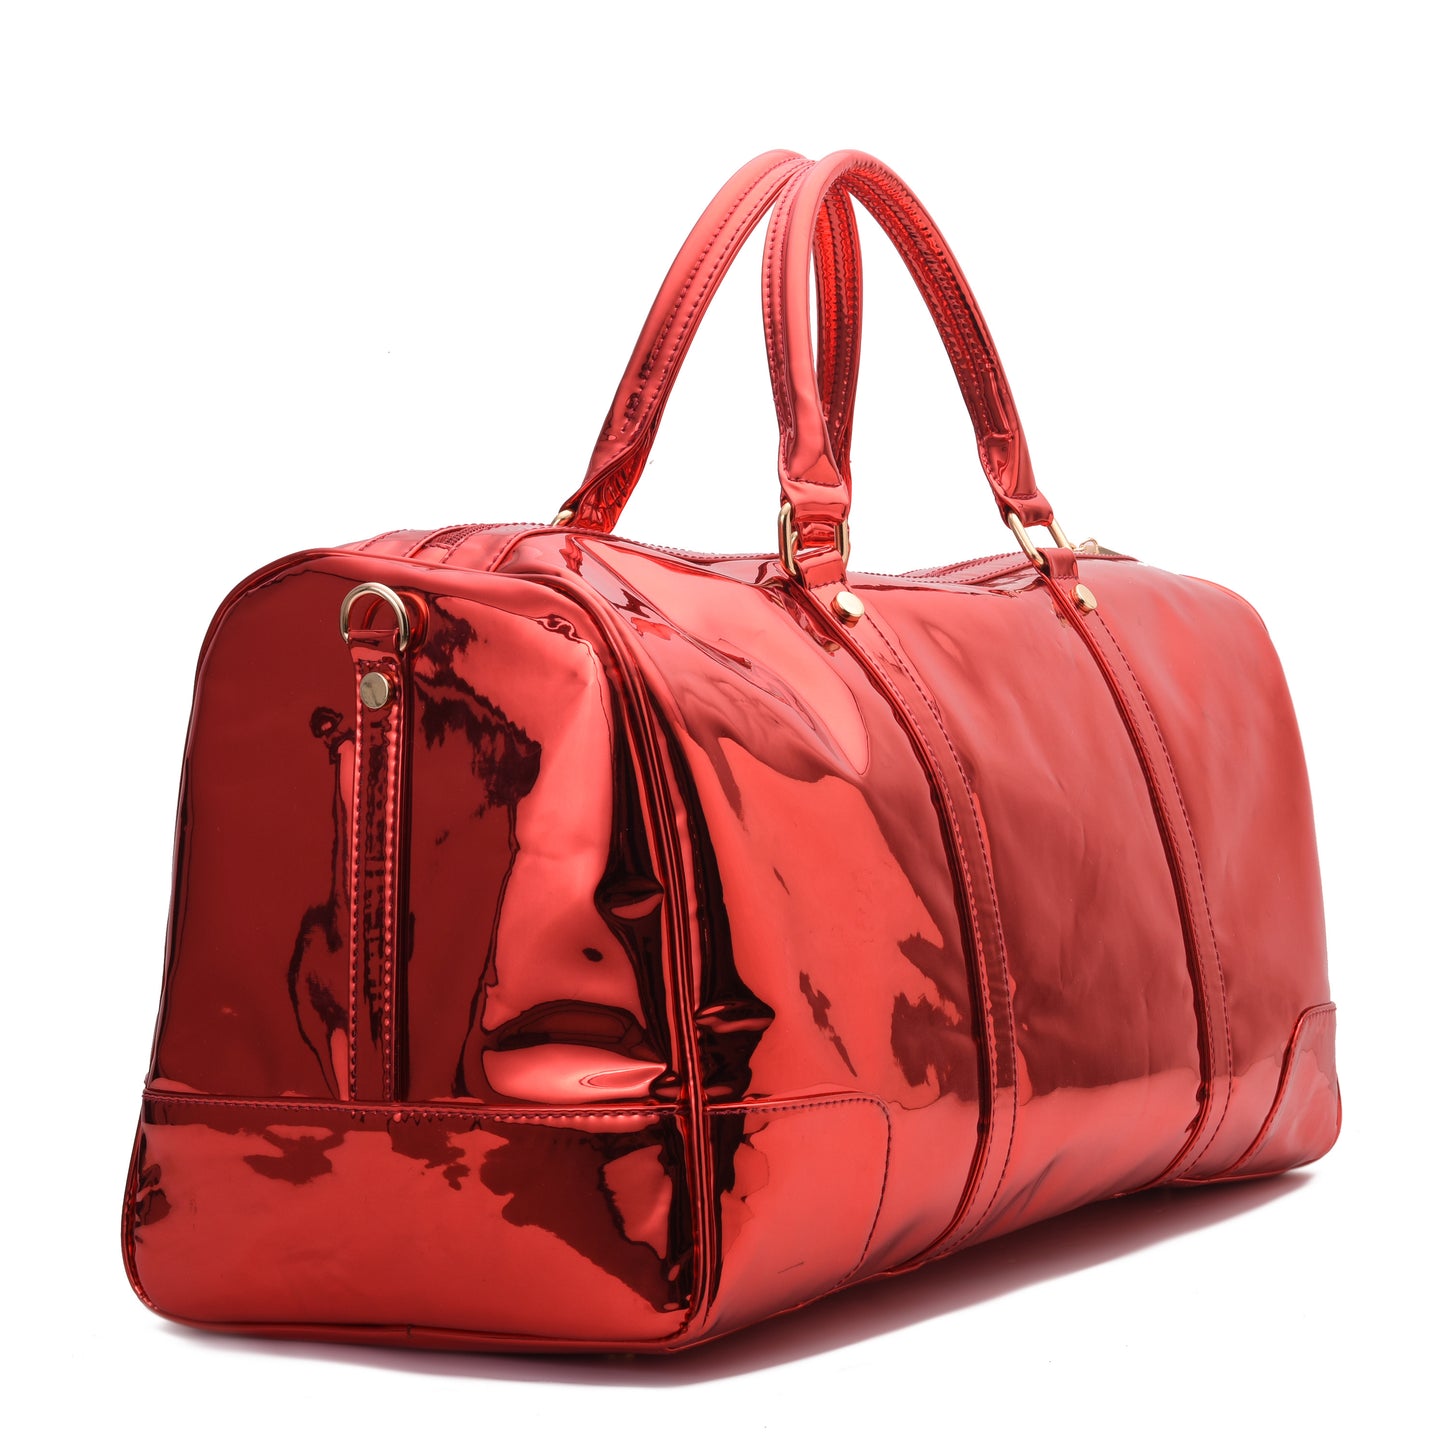 Duffle Bag Red